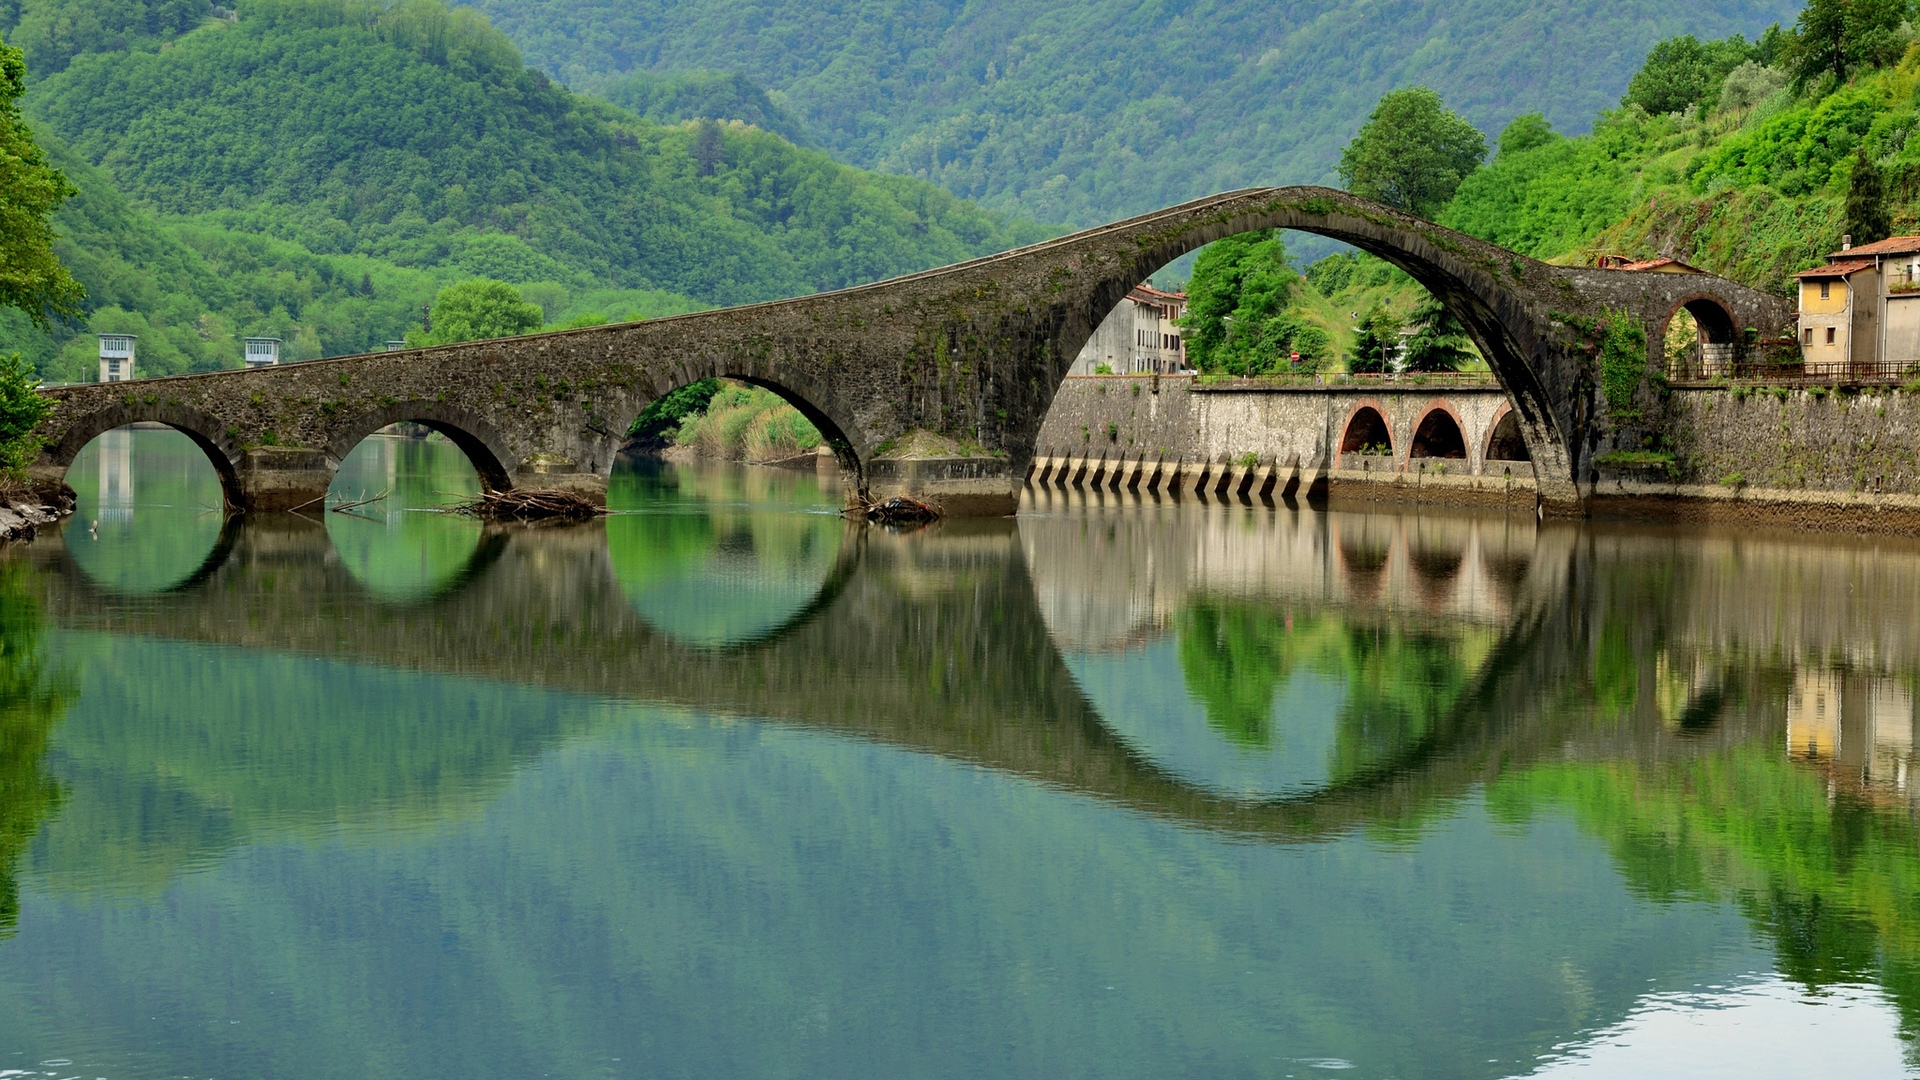 Ponte del Diavolo Italy for 1920 x 1080 HDTV 1080p resolution